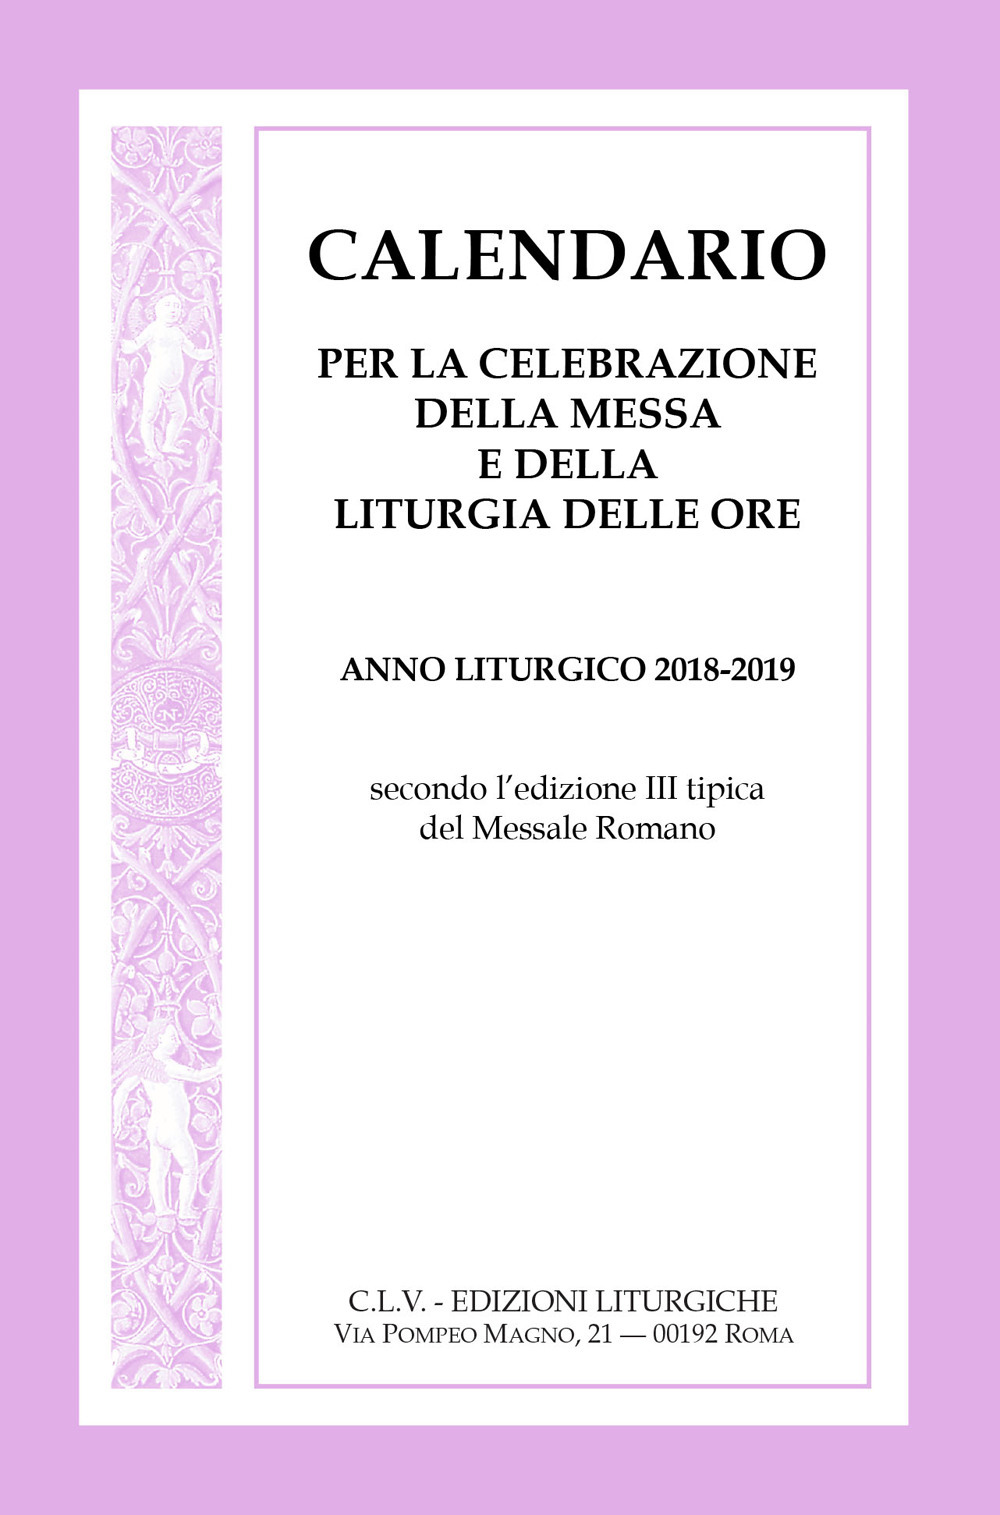 Calendario per la celebrazione della messa e della Liturgia delle ore. Anno liturgico 2018-2019, secondo l'edizione III tipica del Messale Romano